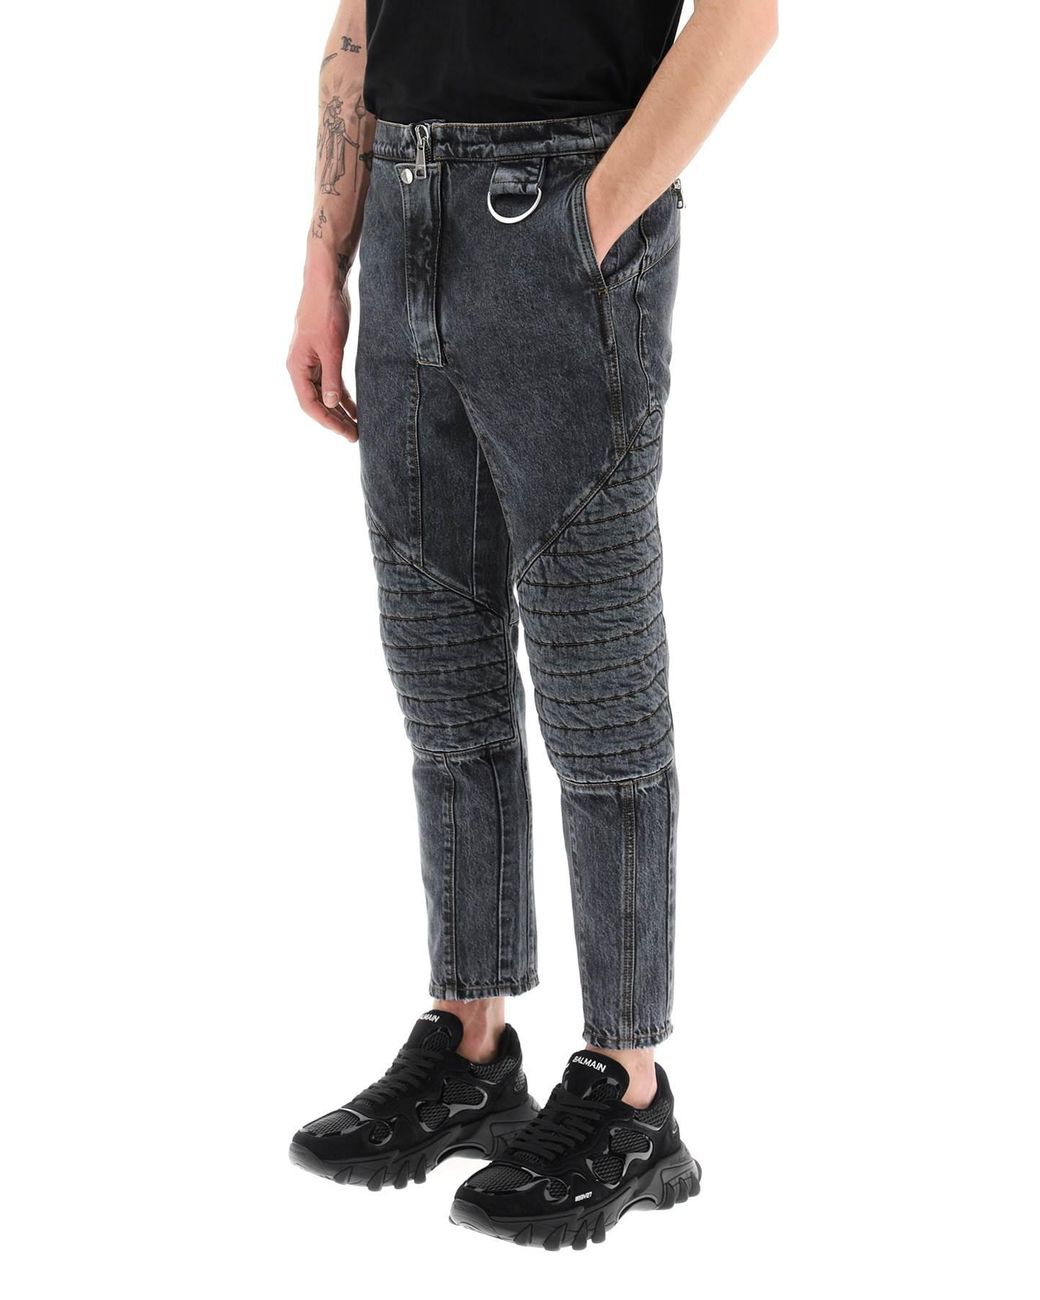 Balmain Skinny & Slim Fit Jeans for Men- Sale